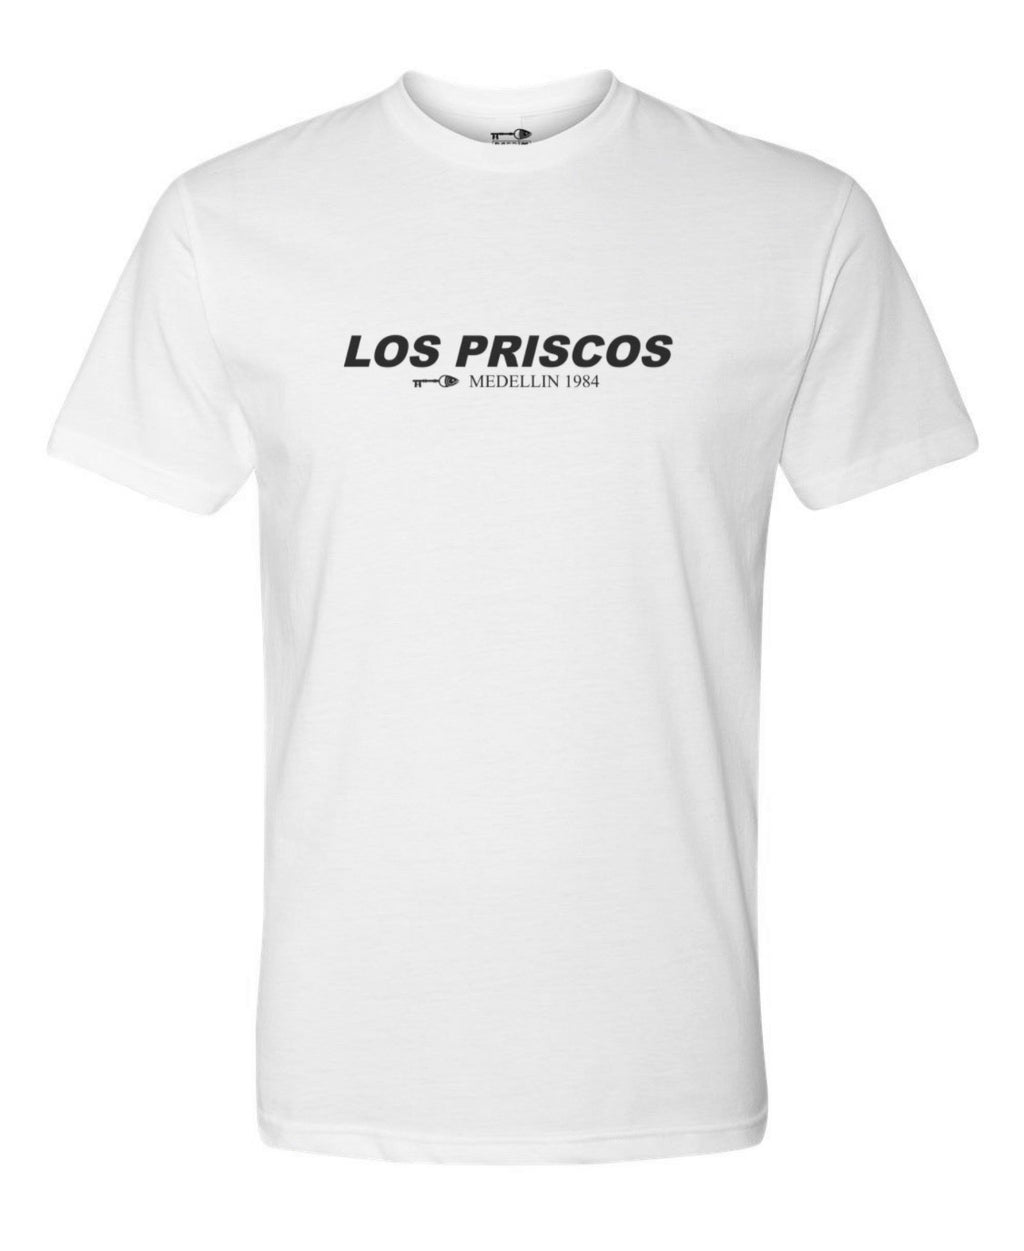 Los Priscos